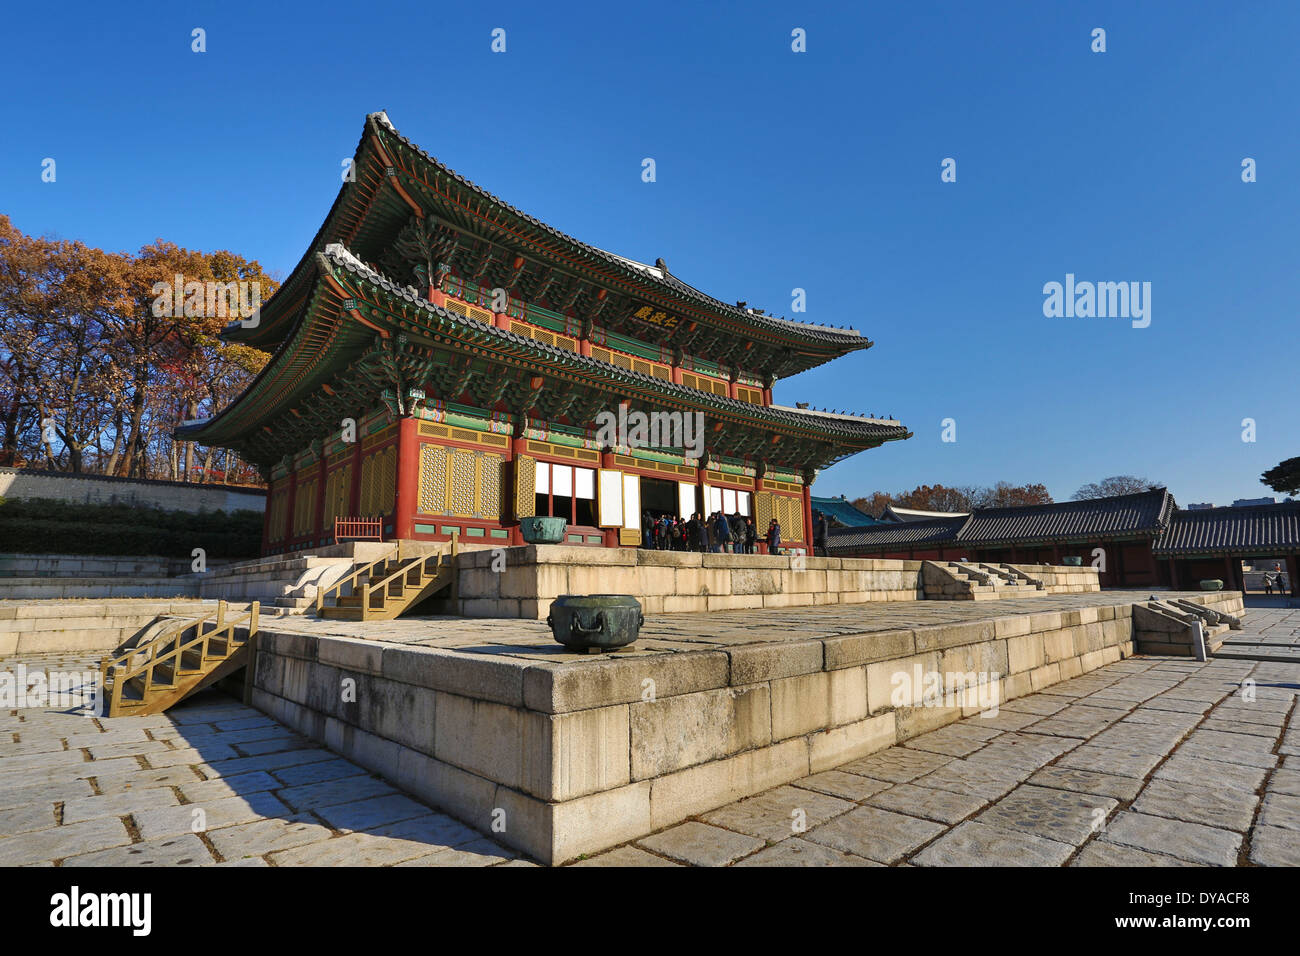 Patrimoine mondial, Gyeongbokgung, Corée, Asie, Séoul, architecture, histoire, palace, touristique, les voyages, l'UNESCO Banque D'Images